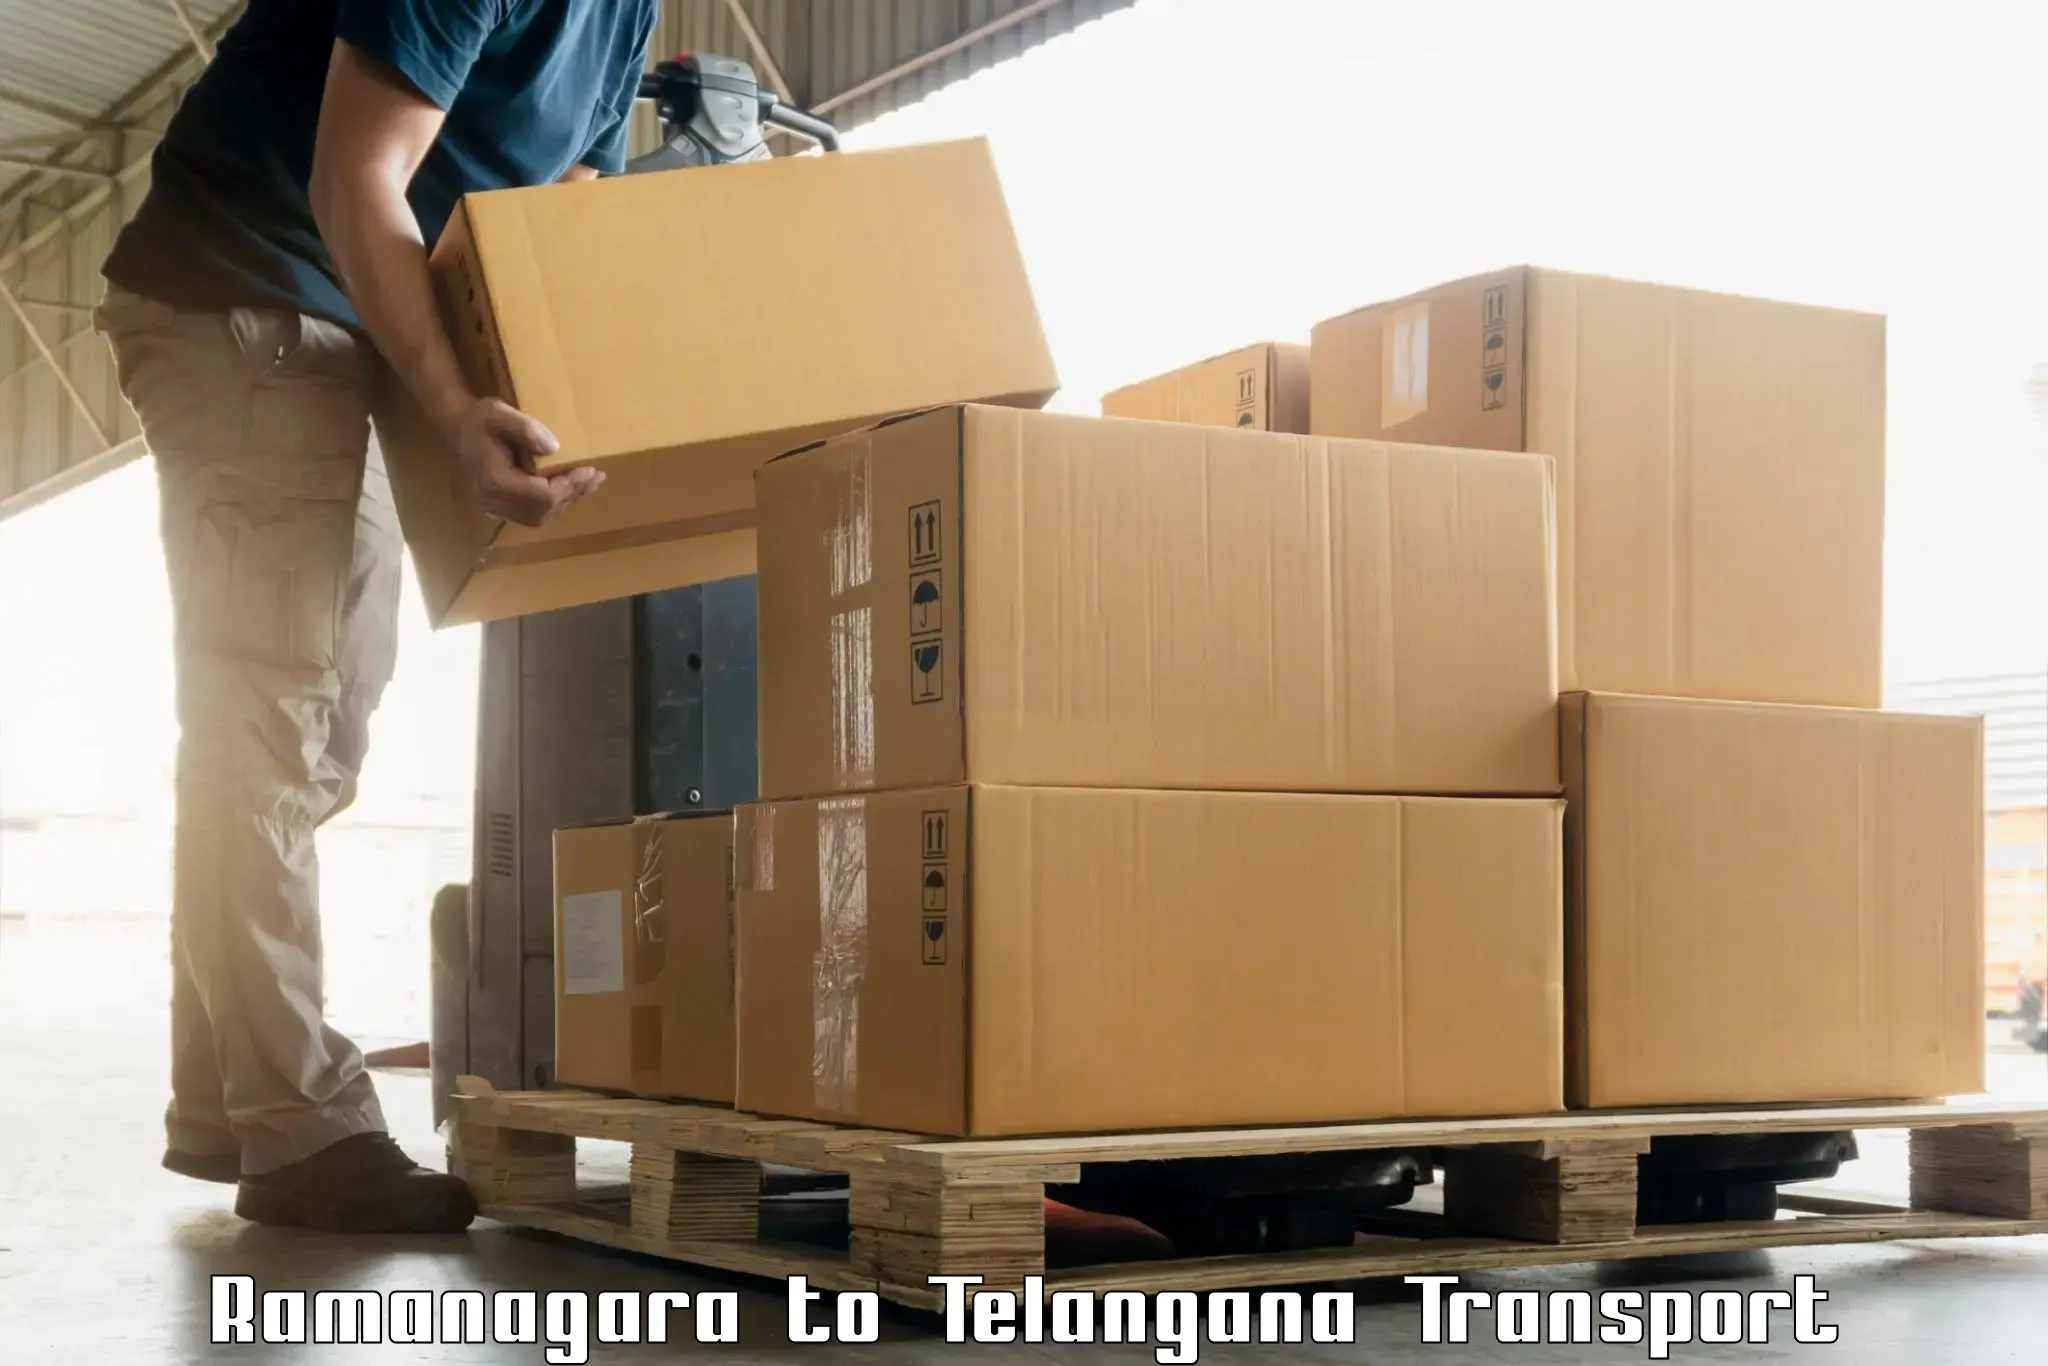 Shipping partner Ramanagara to Mudigonda